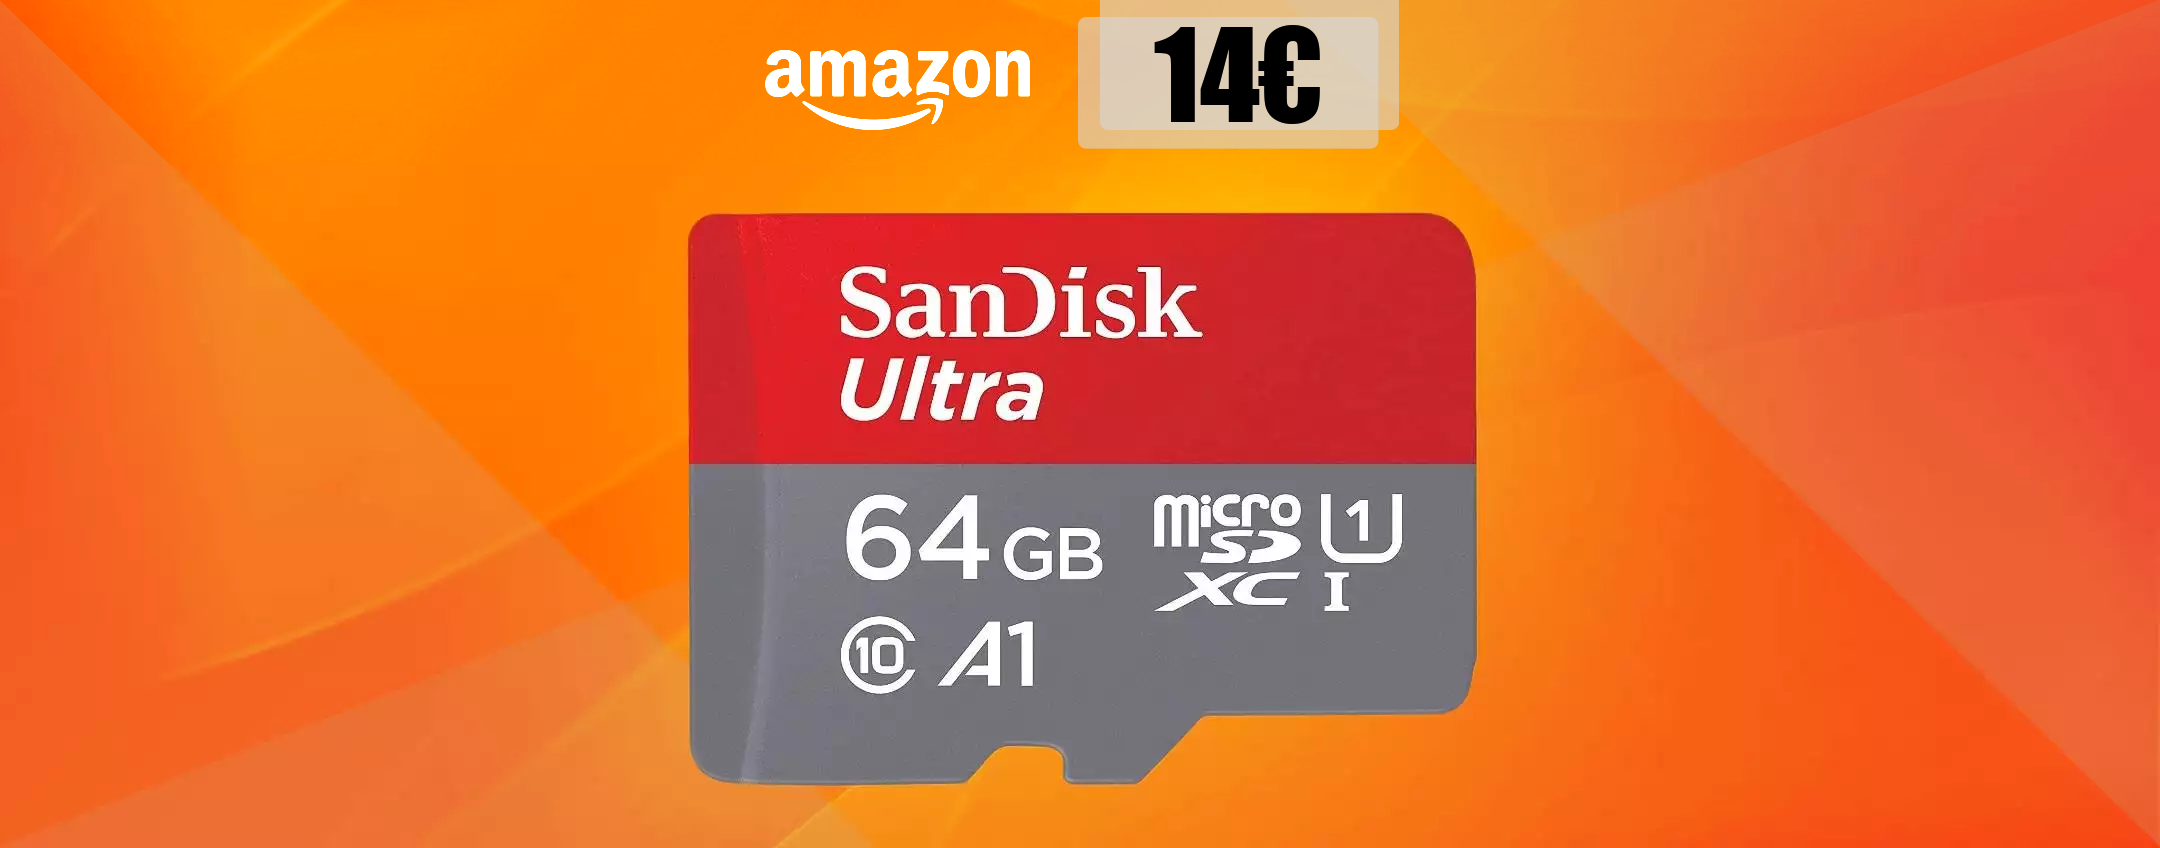 MicroSD 64GB, con appena 14€ ricevi a casa un vero PORTENTO